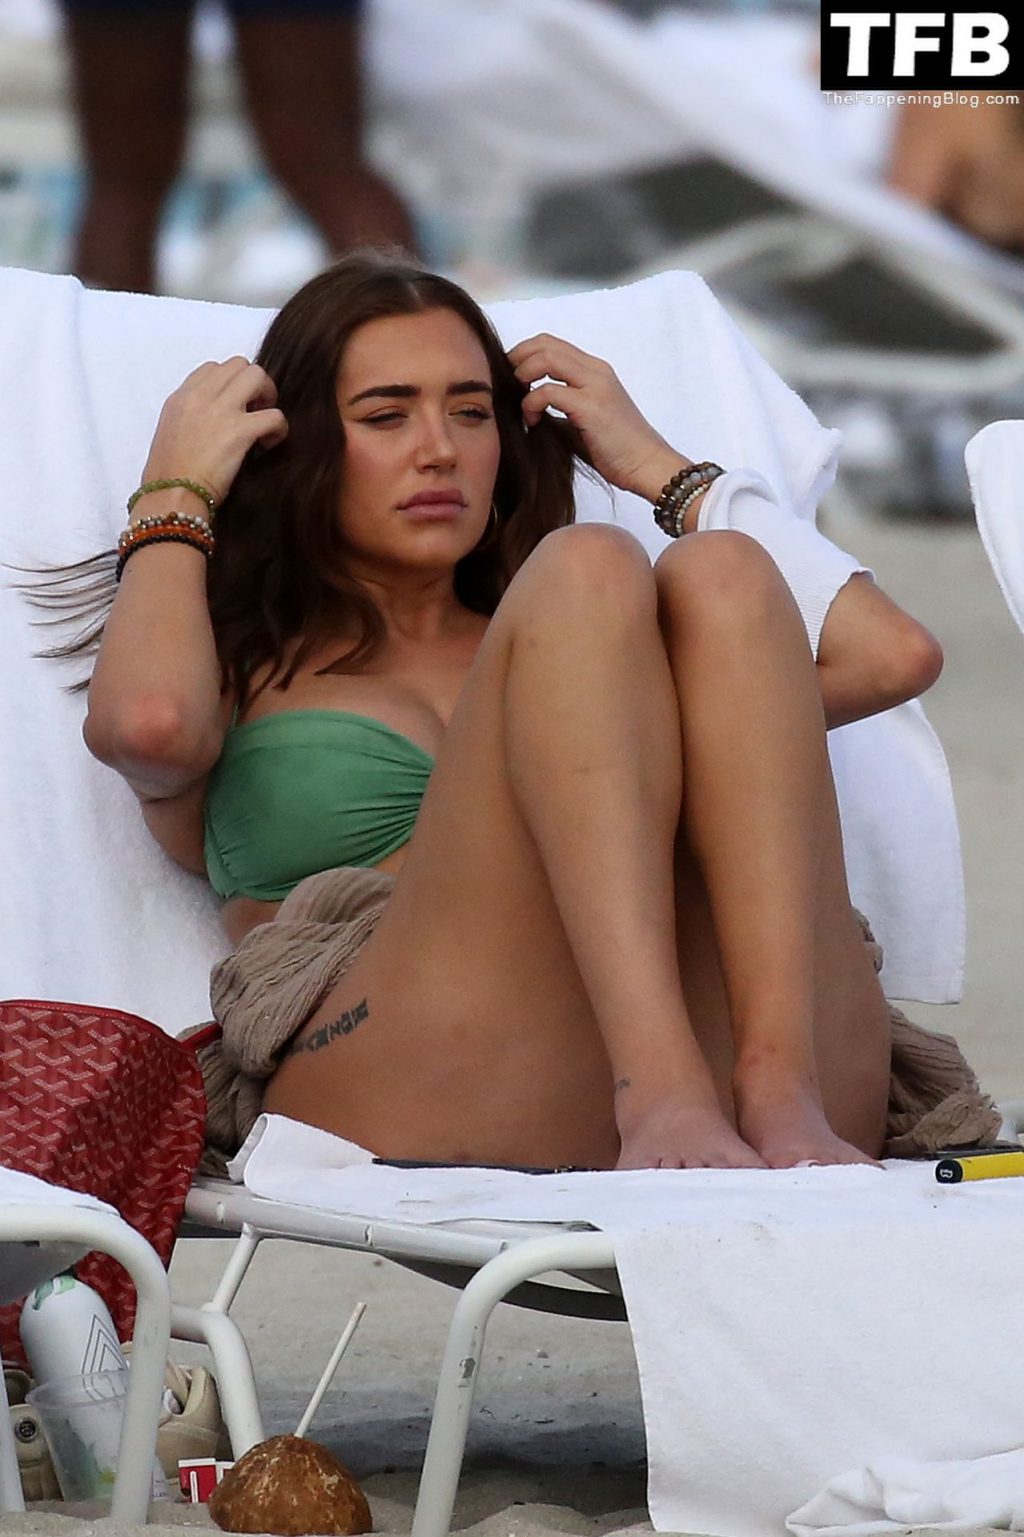 Anastasia Karanikolaou Wears a Green Bikini as She Relaxes With Friends on the Beach in Miami (21 Photos)